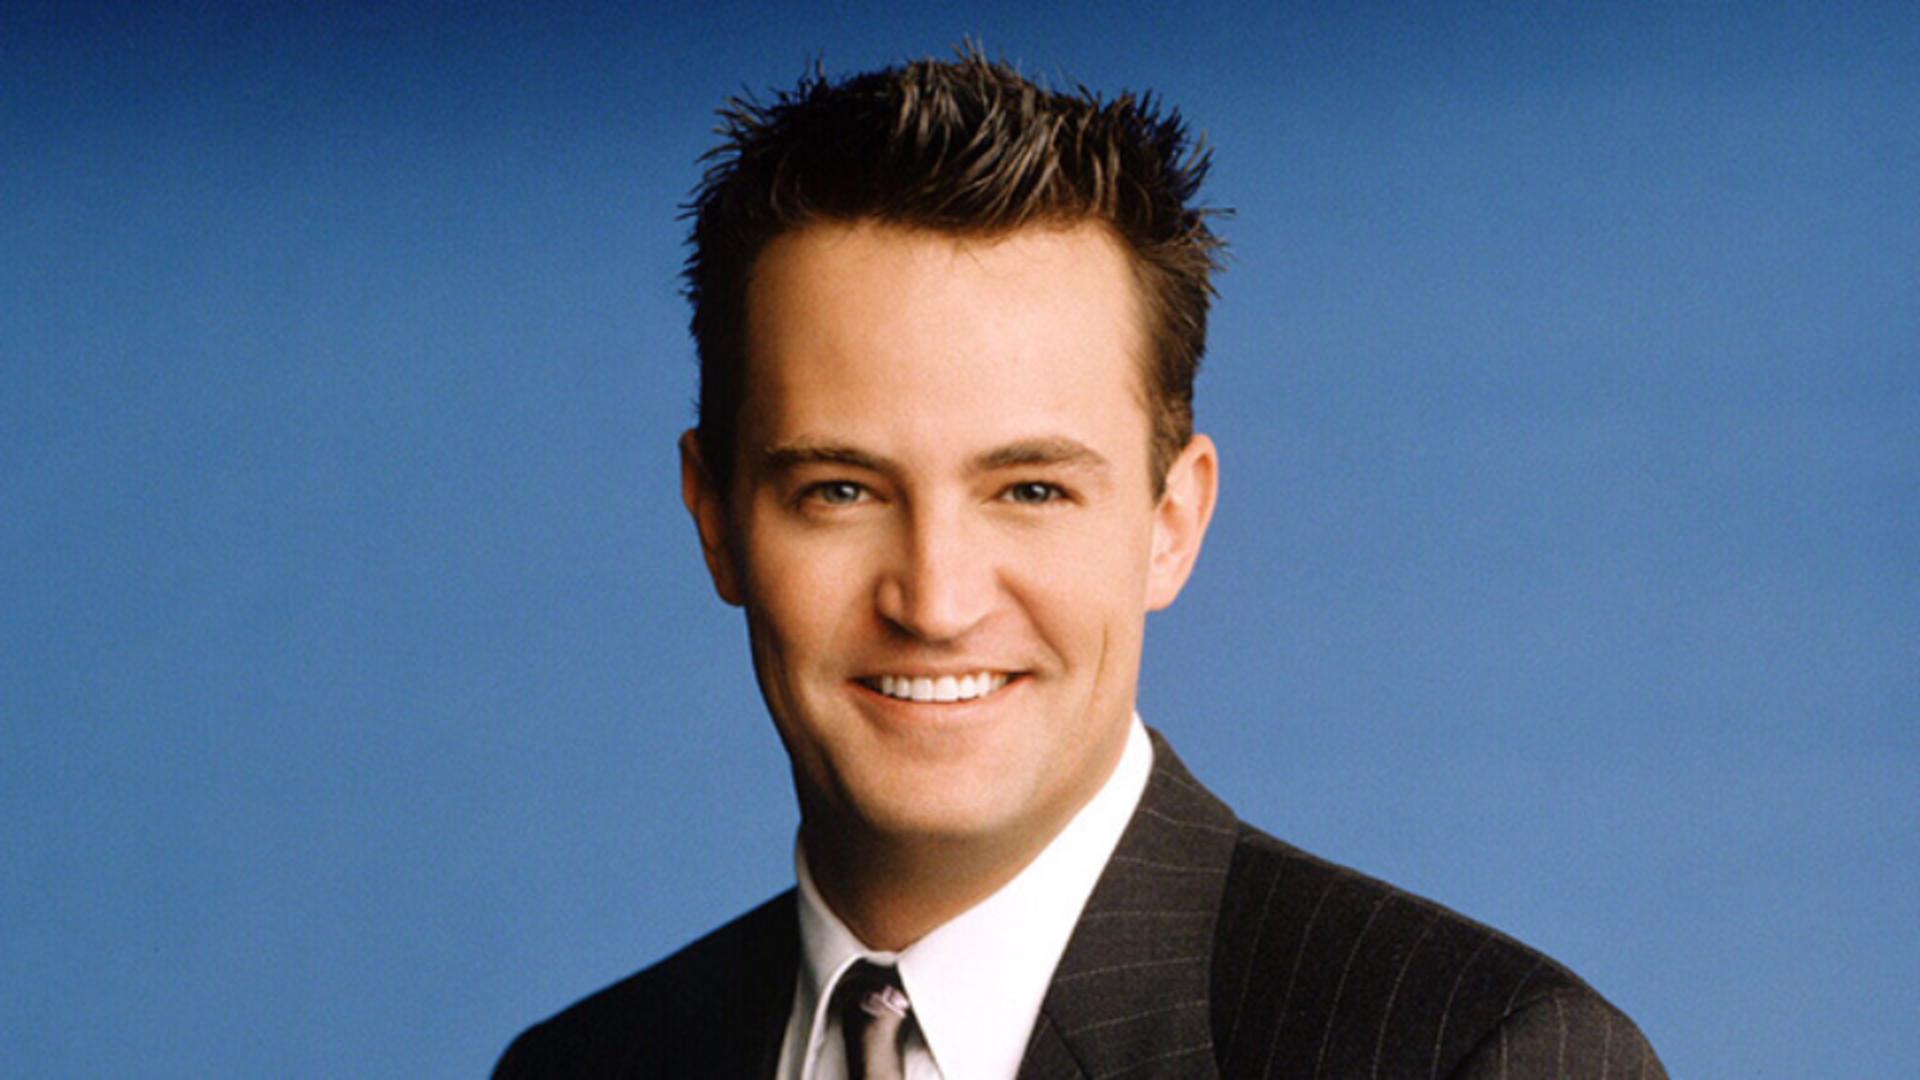 A murit Chandler din Friends. Actorul Matthew Perry a fost găsit fără suflare în cadă